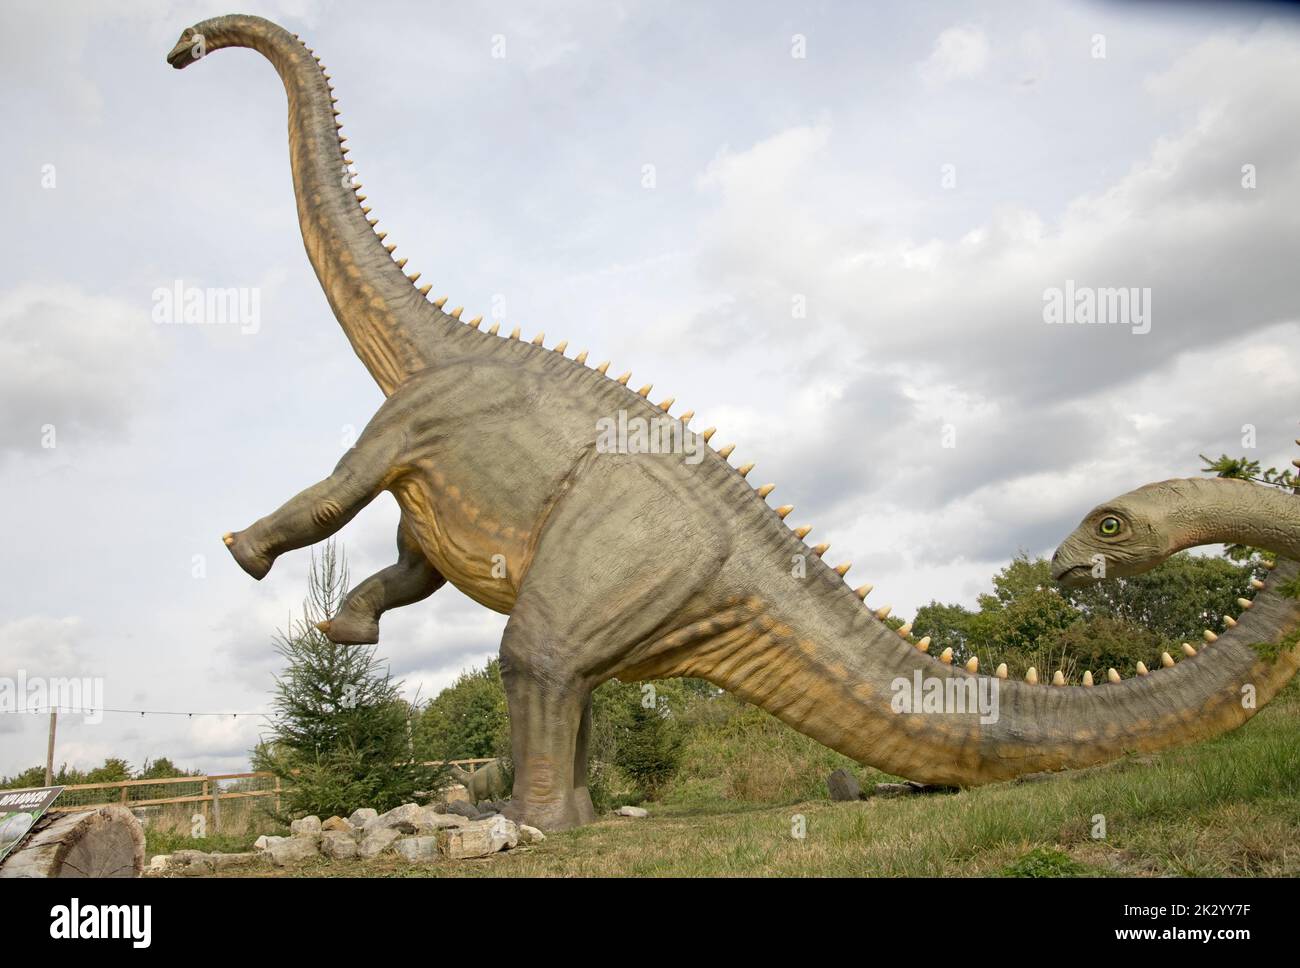 Lebensgroßes Modell des Apatosaurus ein pflanzenfressender Sauropoden-Dinosaurier, der im späten Jurassic All Things Wild, Honeybourne, Großbritannien, lebte Stockfoto